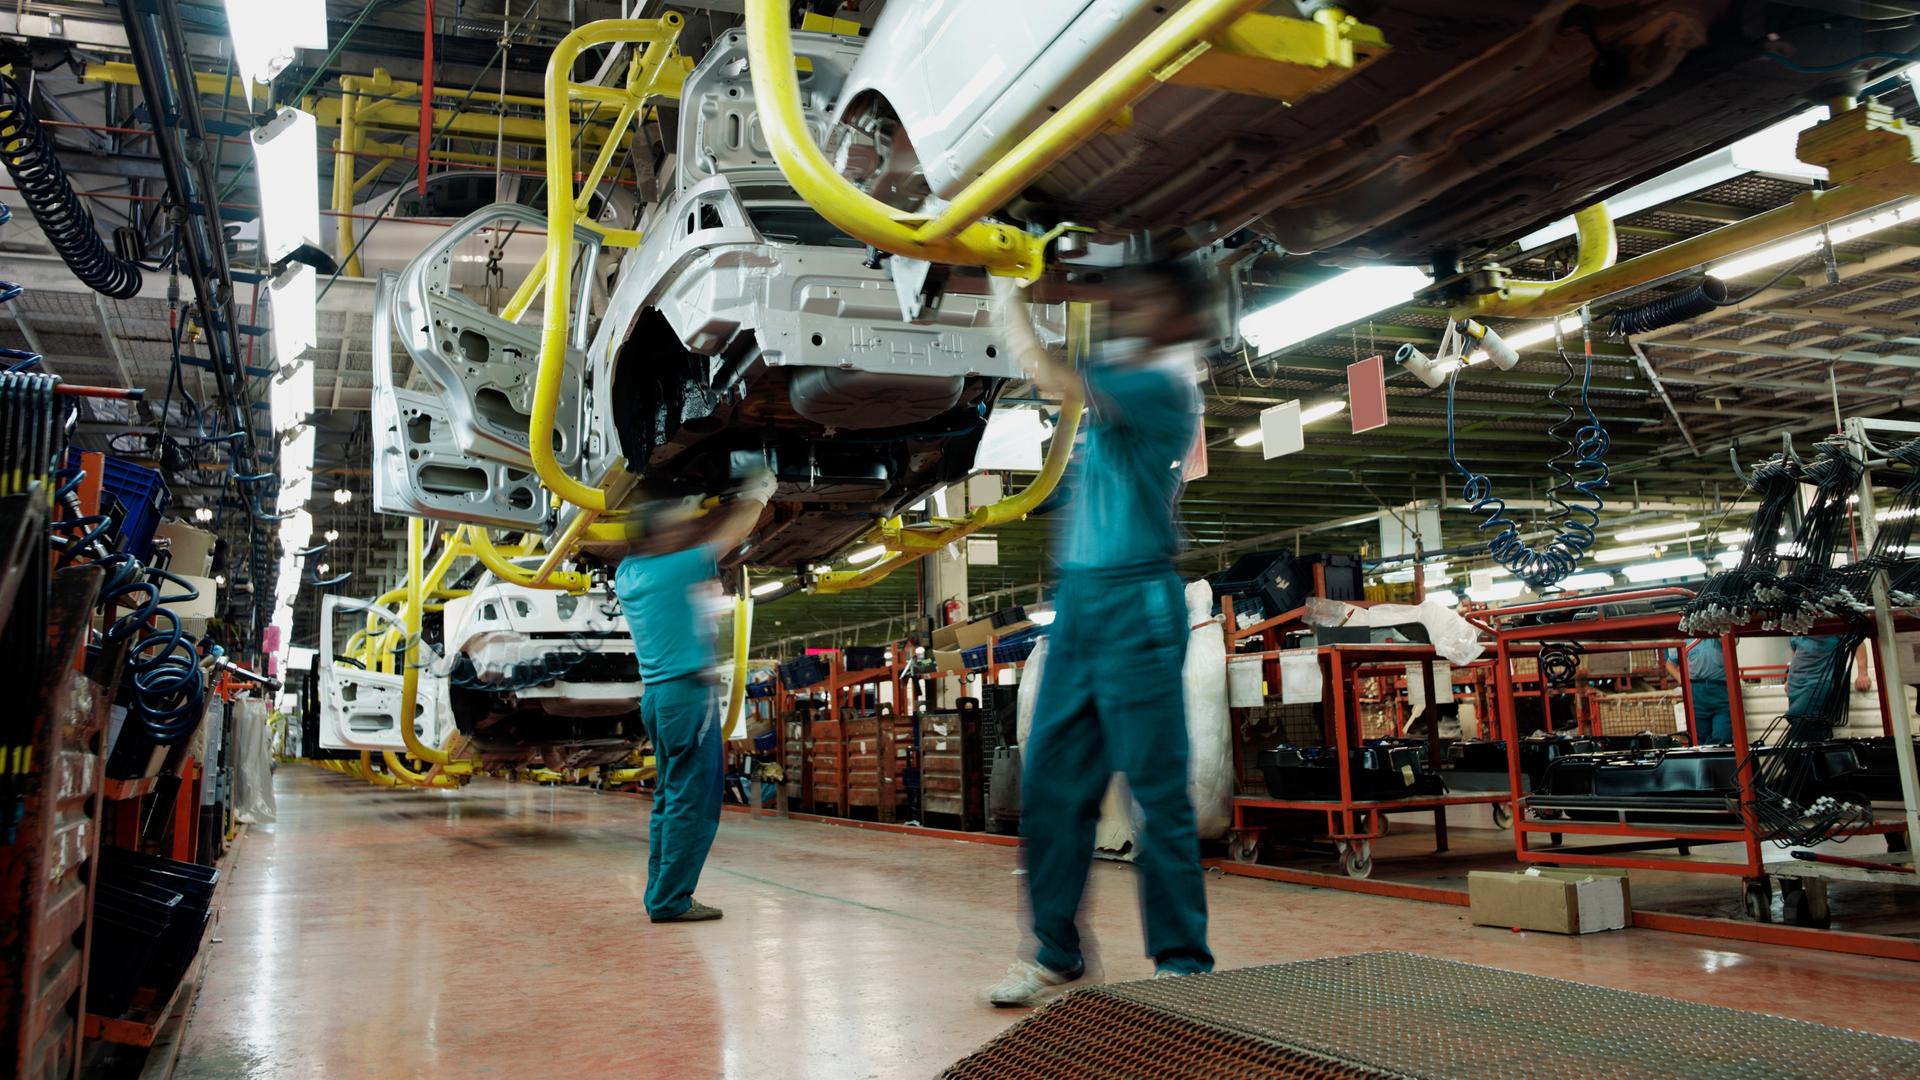 Zwei Arbeiter in grünen Hemden und blauen Hosen arbeiten unter einem Auto in einer Automobilfabrik. Im Hintergrund sind Montagebänder, teilweise fertige Autos, Werkzeuge und Elektrogeräte zu sehen.